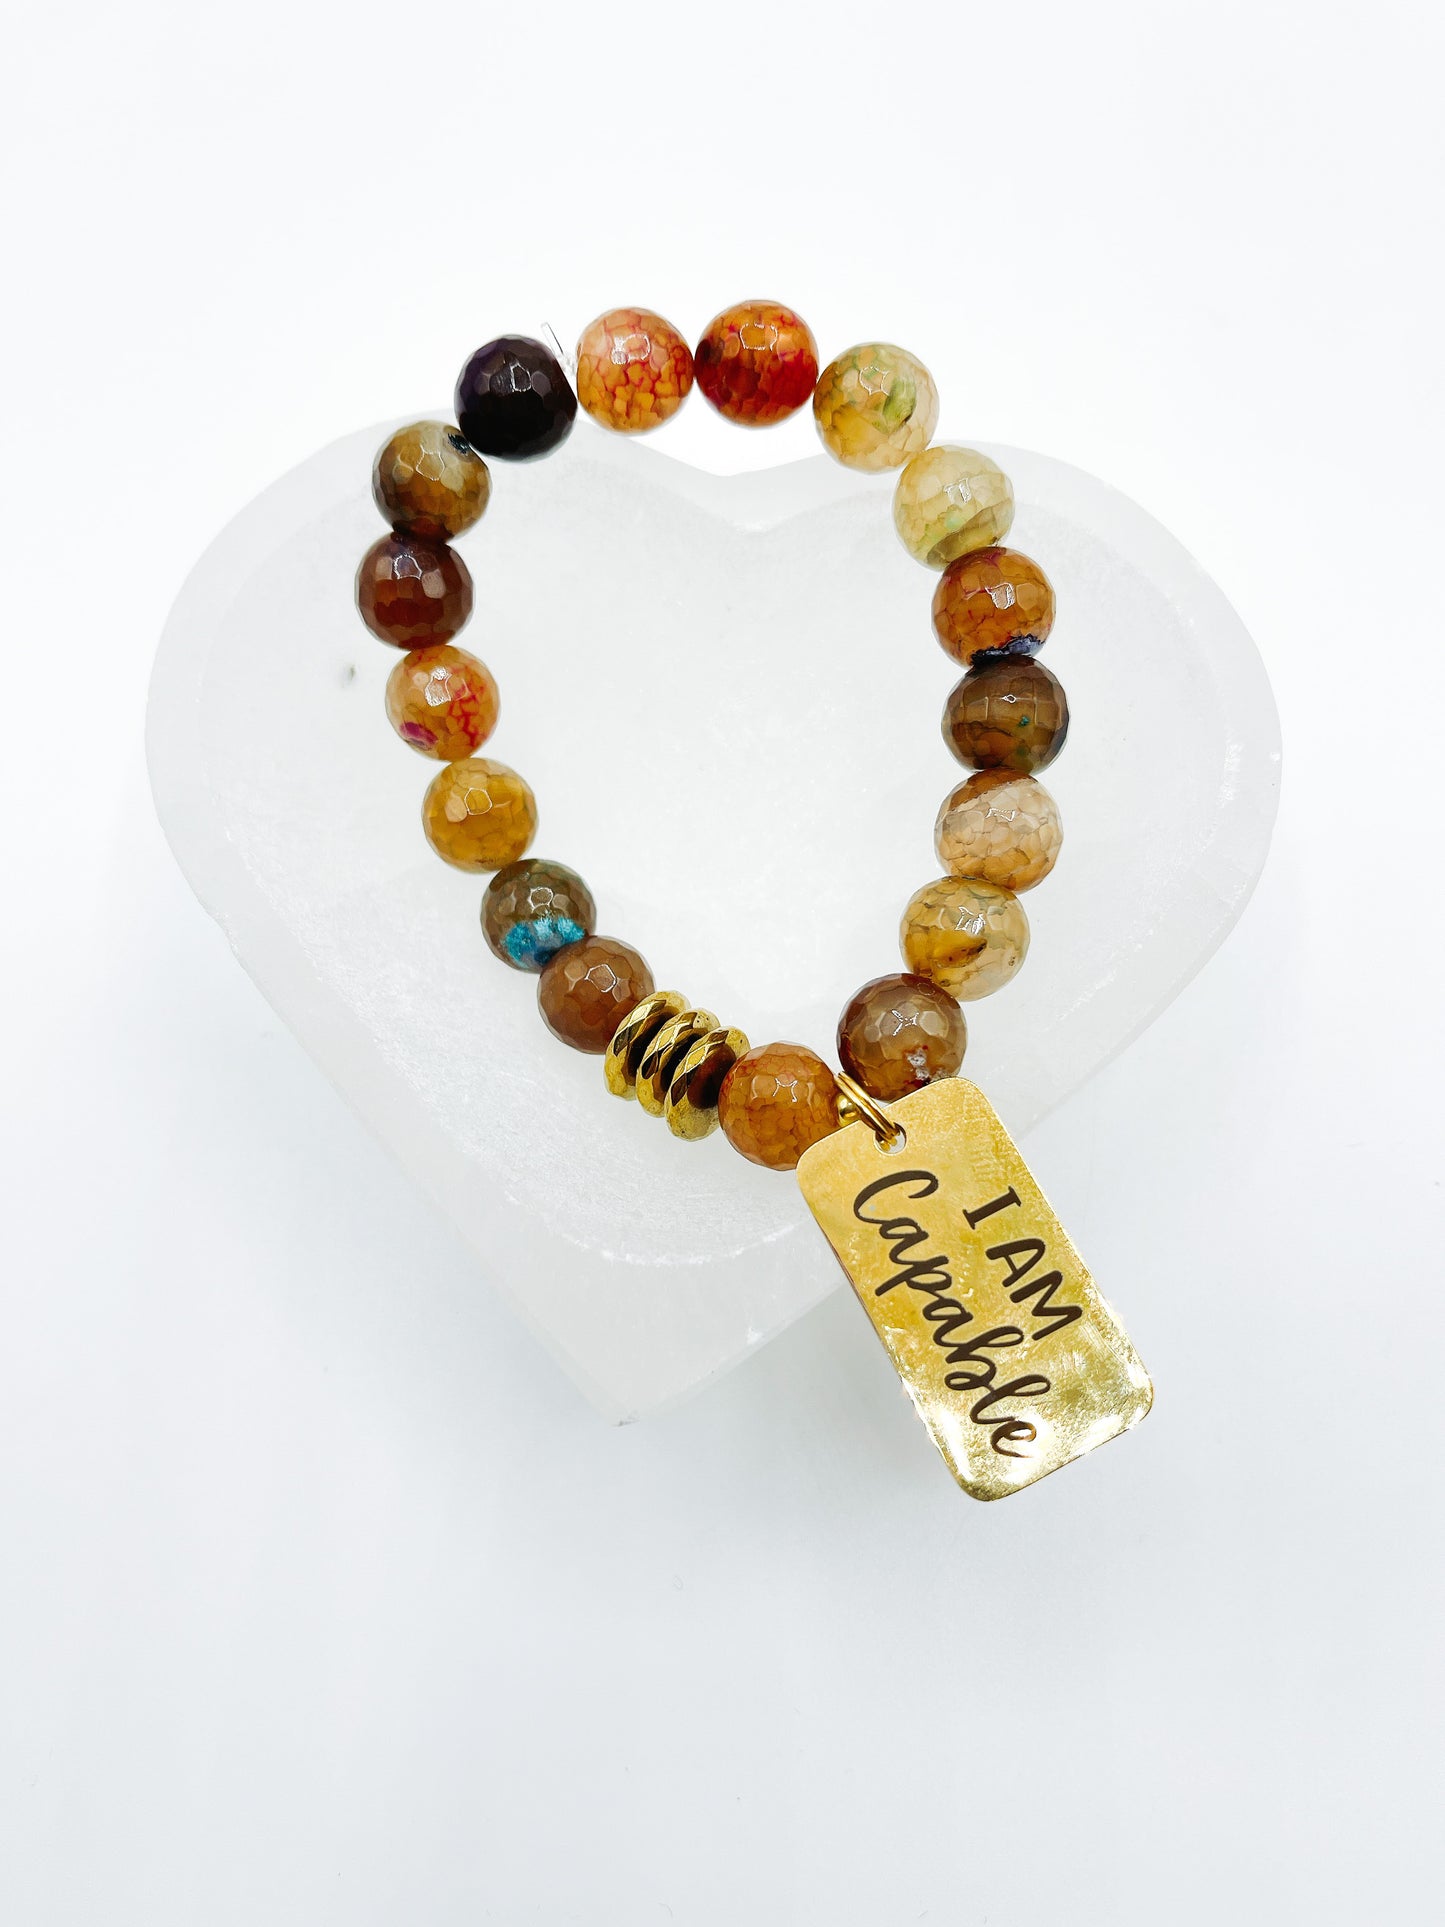 Affirmation Bracelet - “I Am” Collection